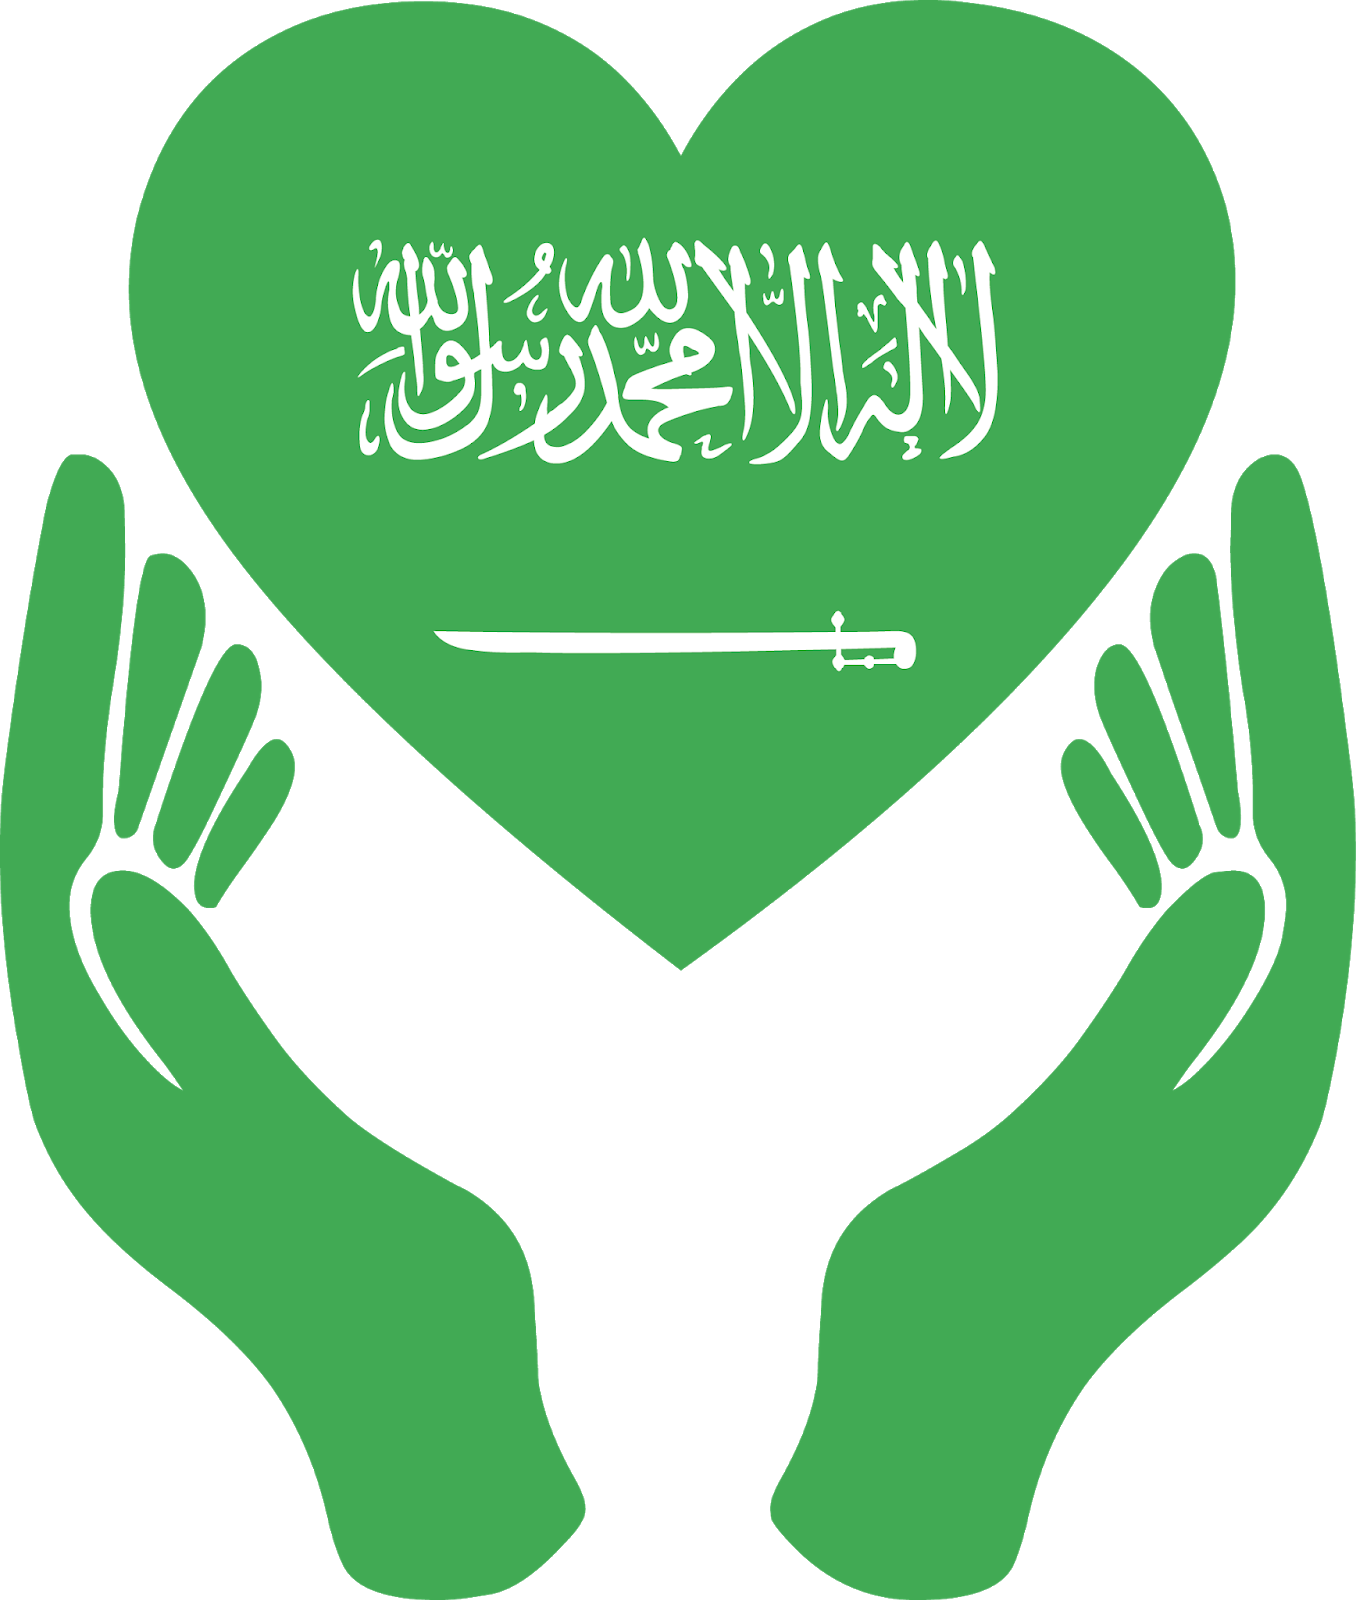 صور علم السعوديه , اجدد صور ورمزيات وخلفيات العلم السعودي - كلام نسوان